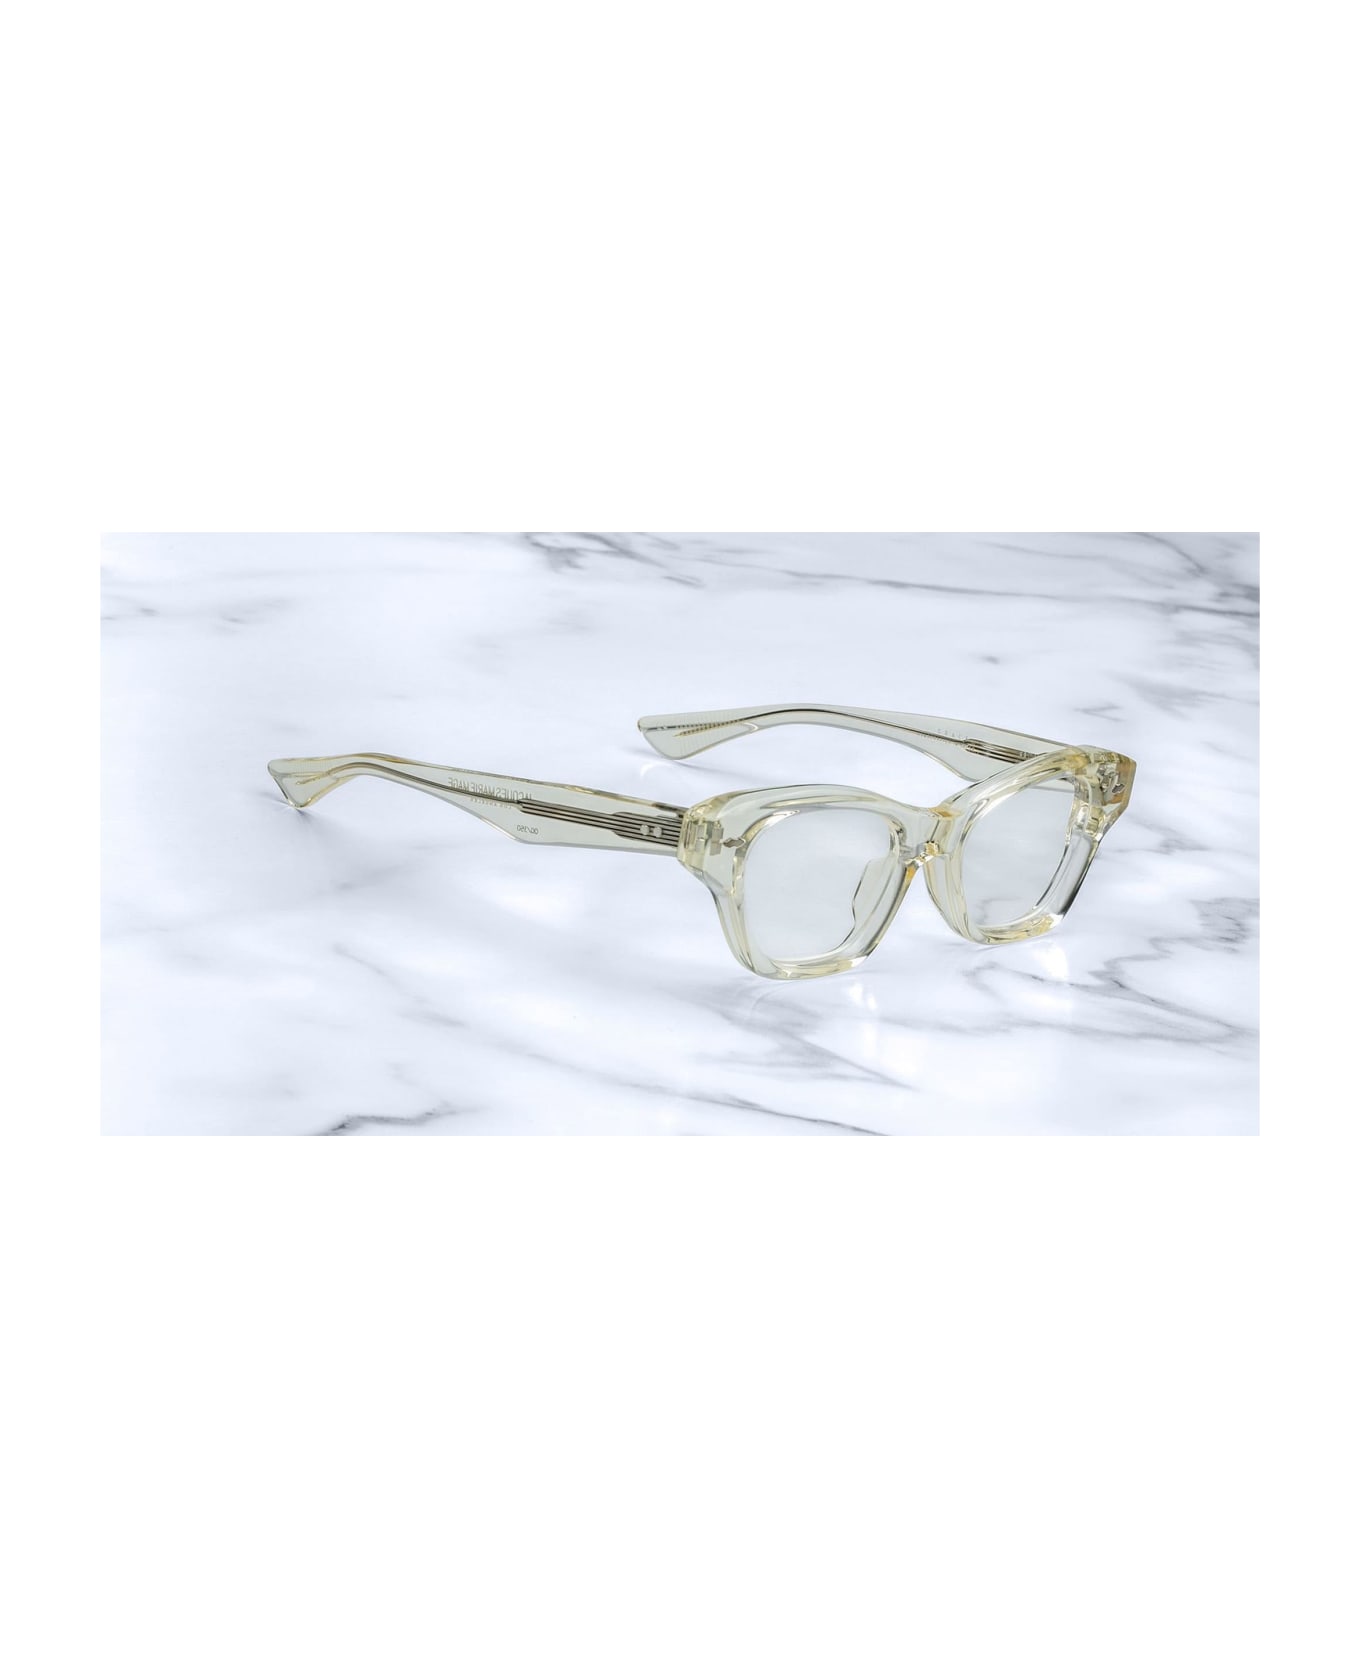 Jacques Marie Mage Grace 2 - Sunkiss Rx Glasses - transparent